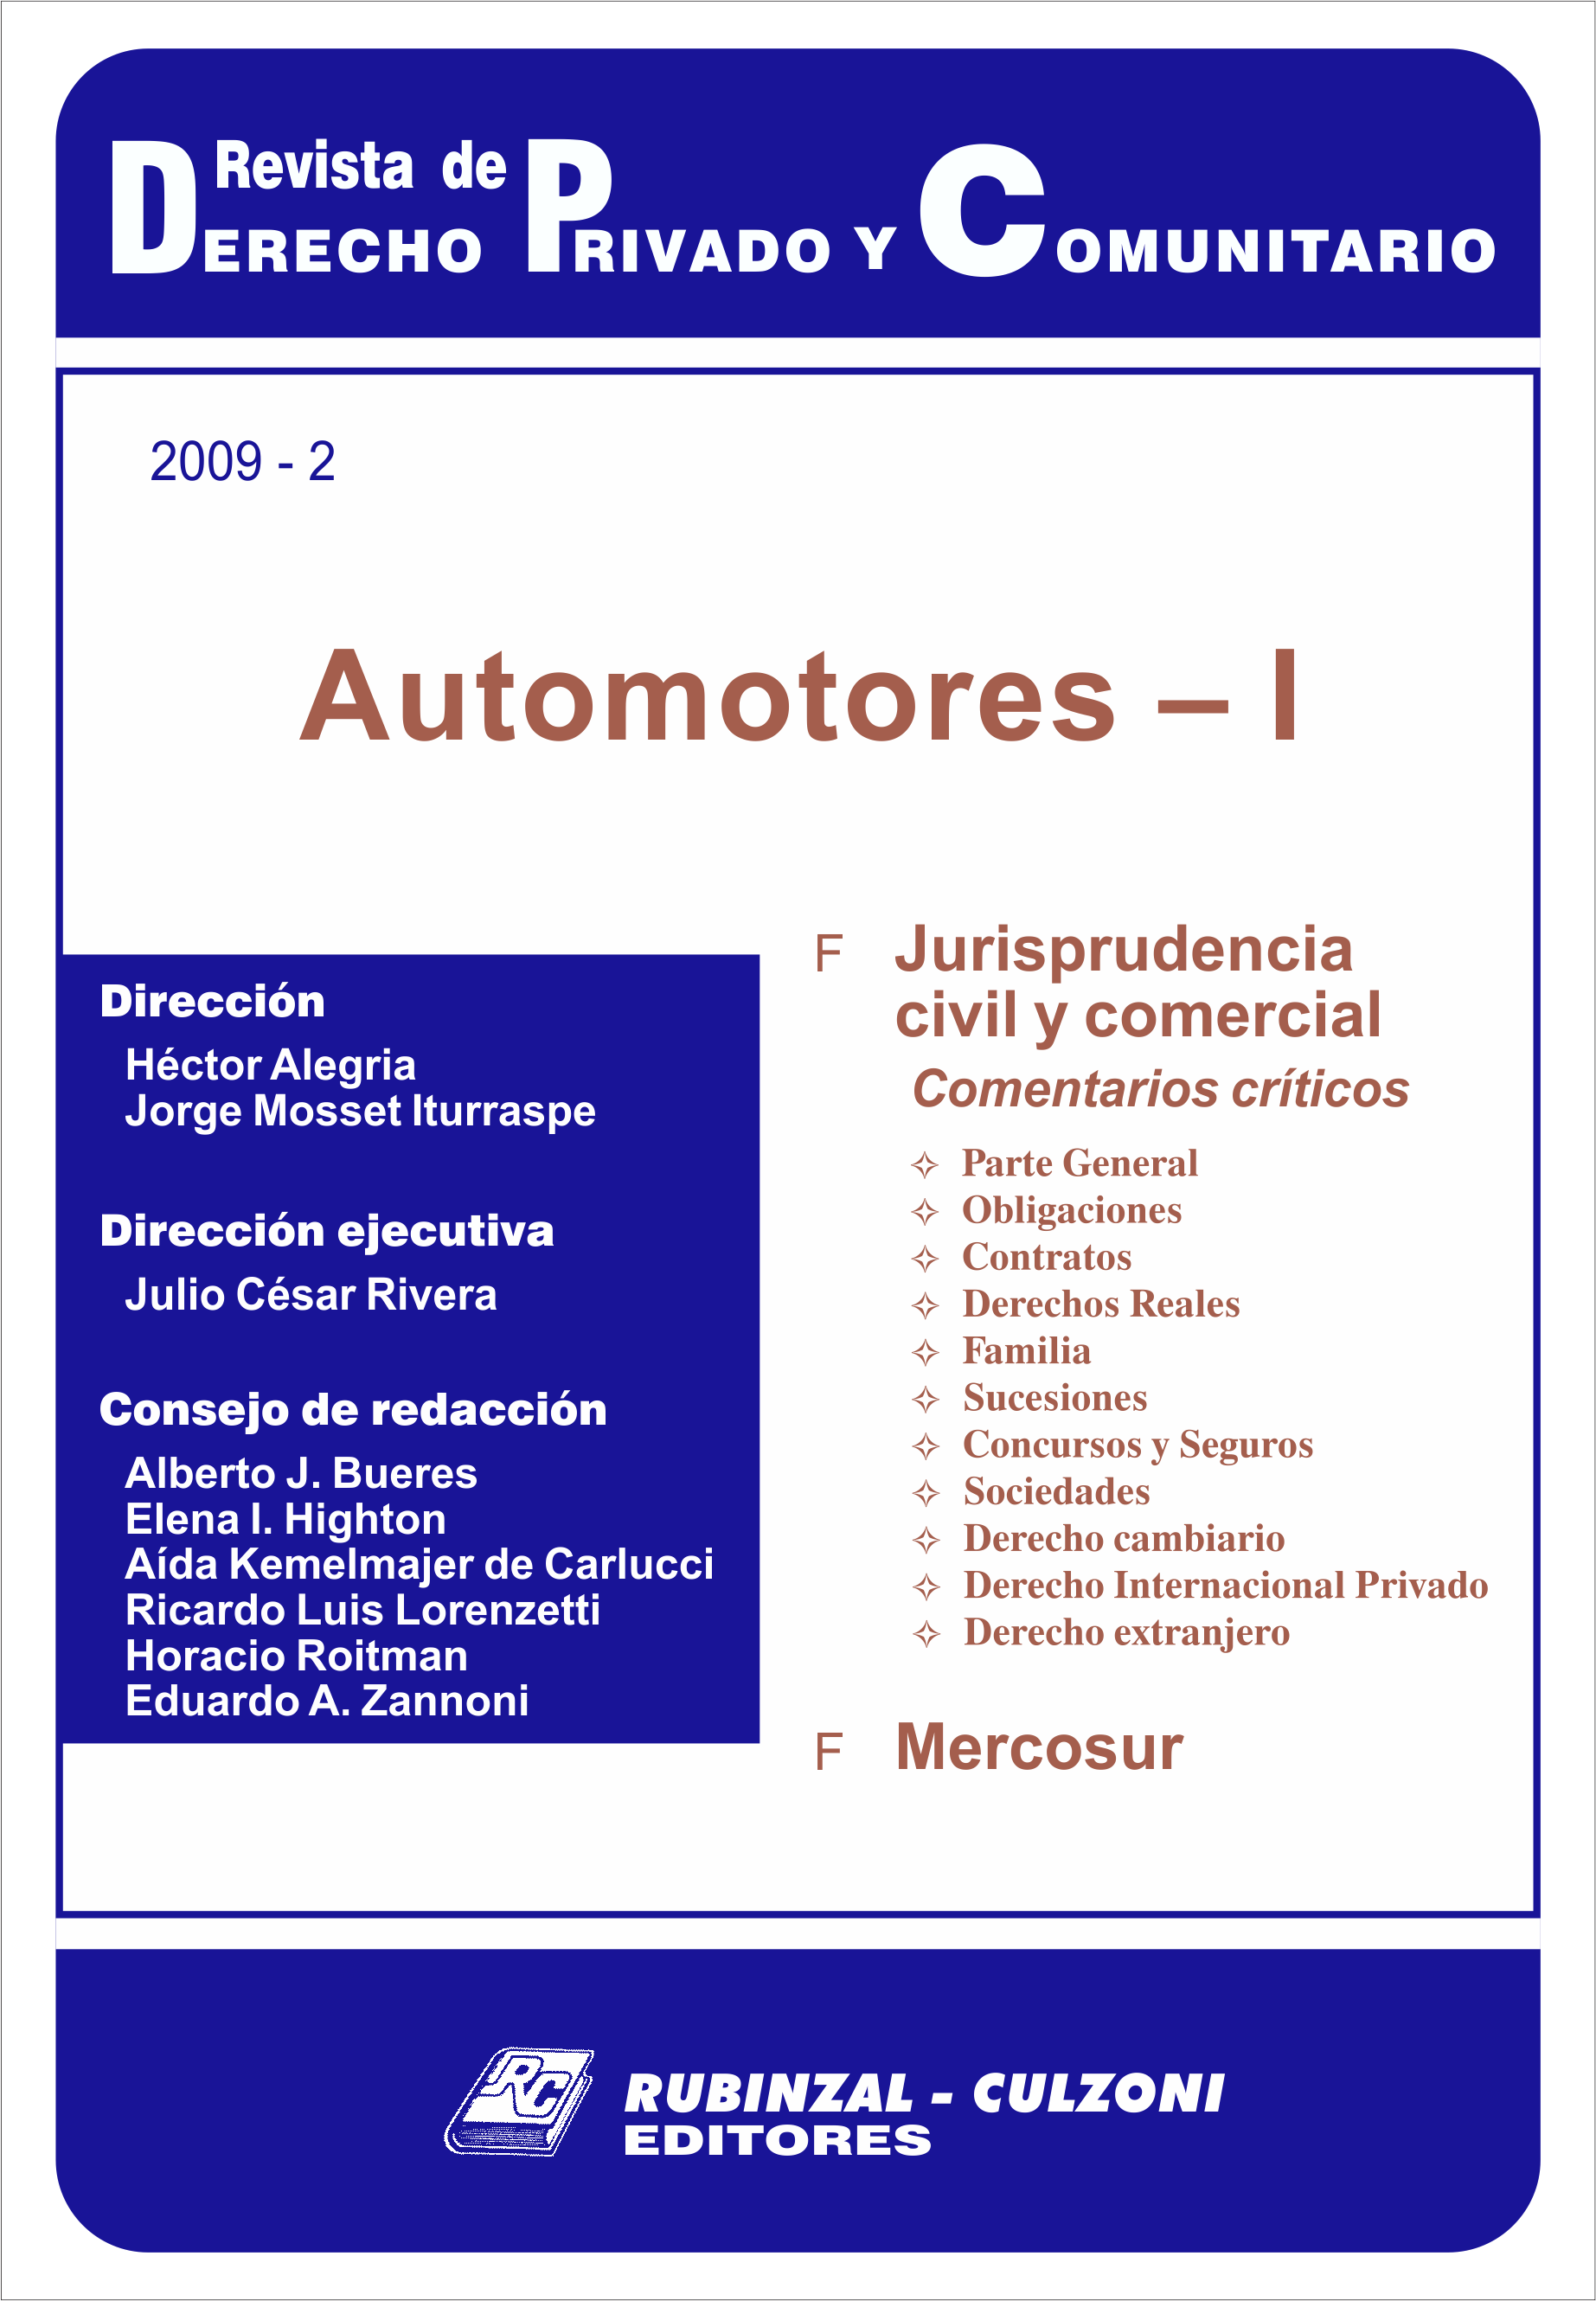 Revista de Derecho Privado y Comunitario - Automotores - I